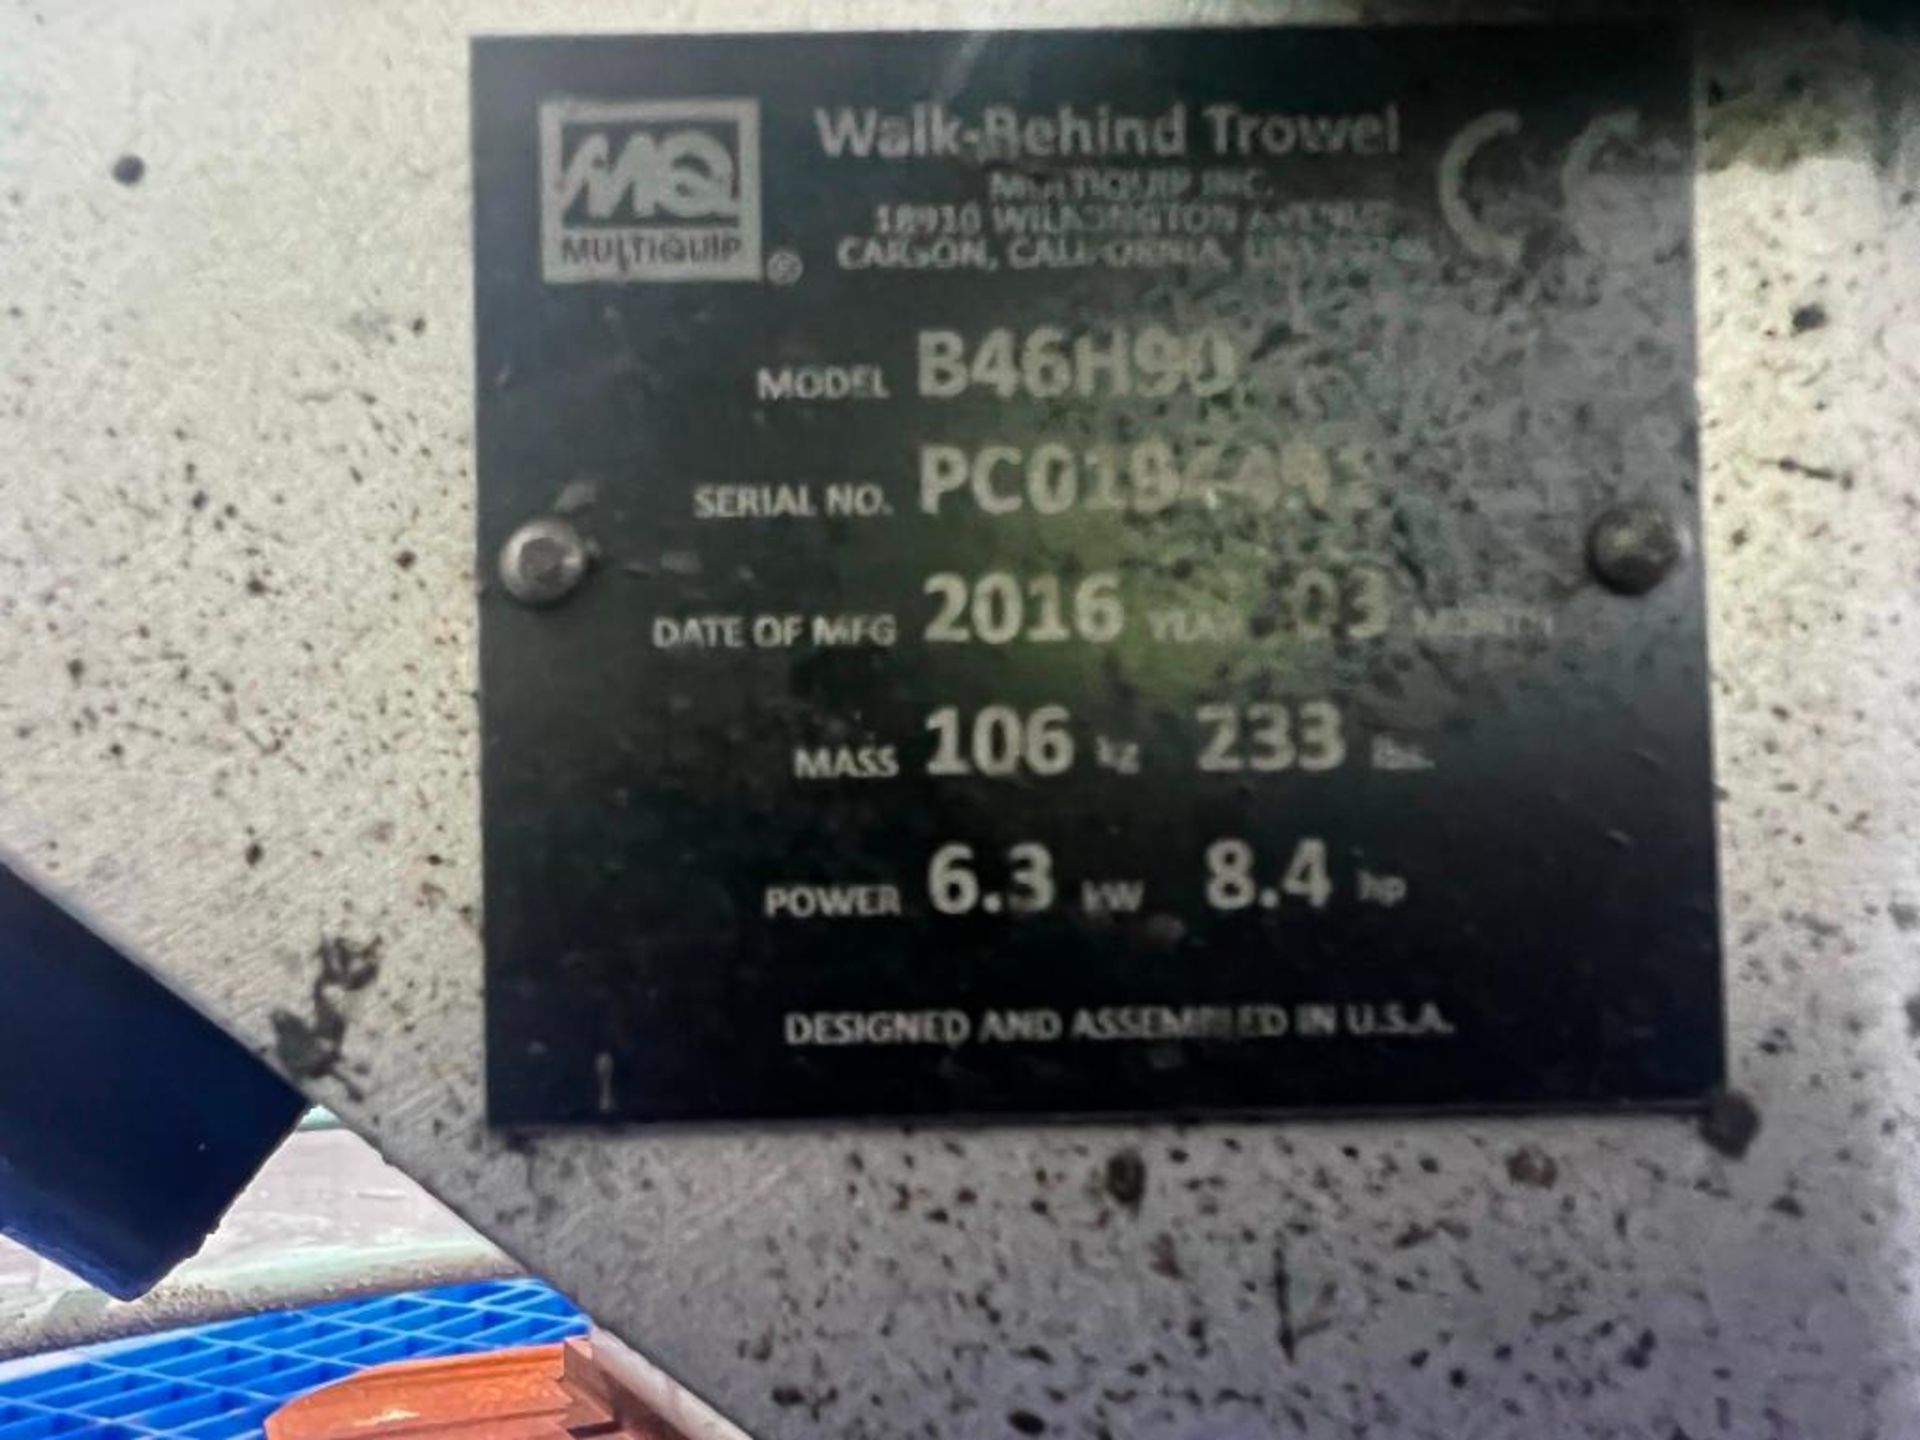 2016 MultiQuip B46H90 Walk-Behind Concrete Trowel - Bild 10 aus 10